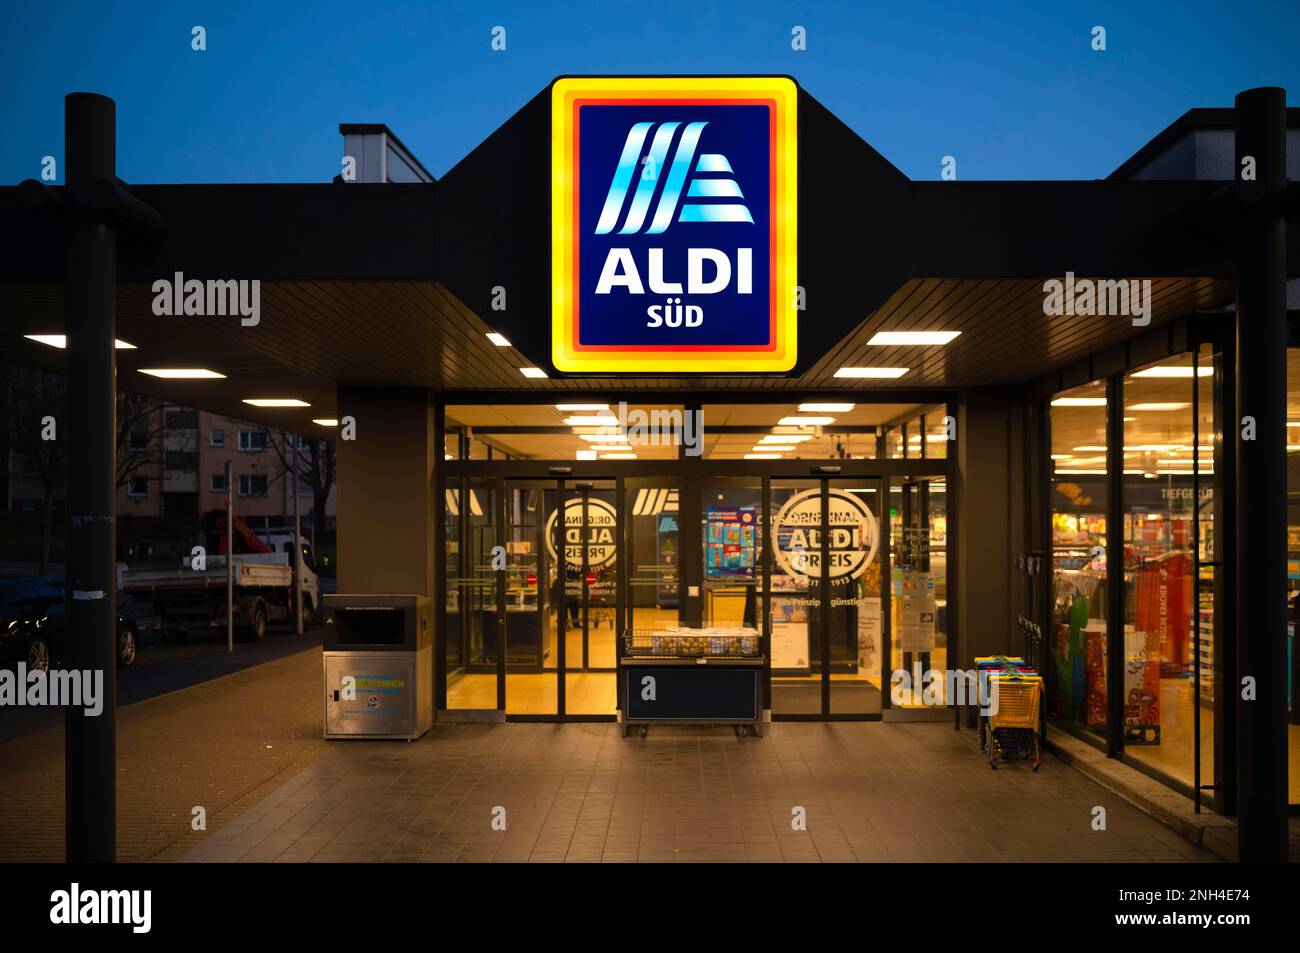 Entrée sous-section de l'ALDI, chaîne de détail, épicerie, logo sur l'affiche, heure bleue, Stuttgart, Bade-Wurtemberg, Allemagne Banque D'Images